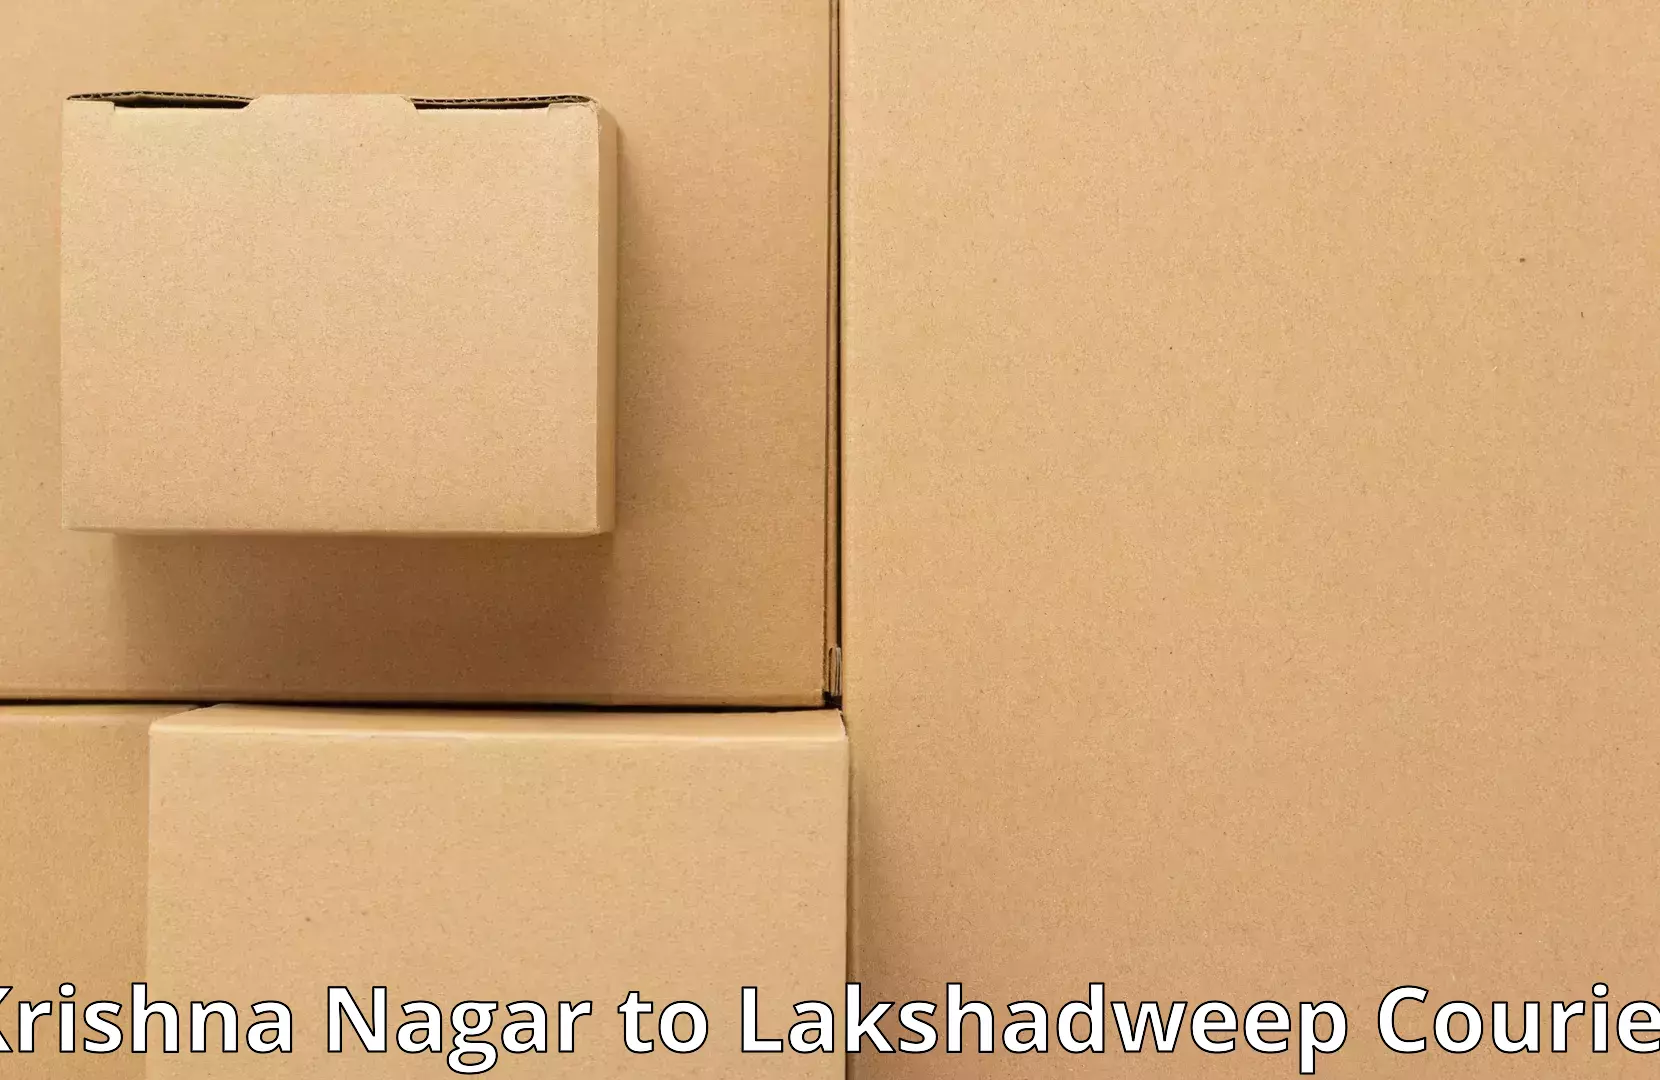 Local moving services Krishna Nagar to Lakshadweep